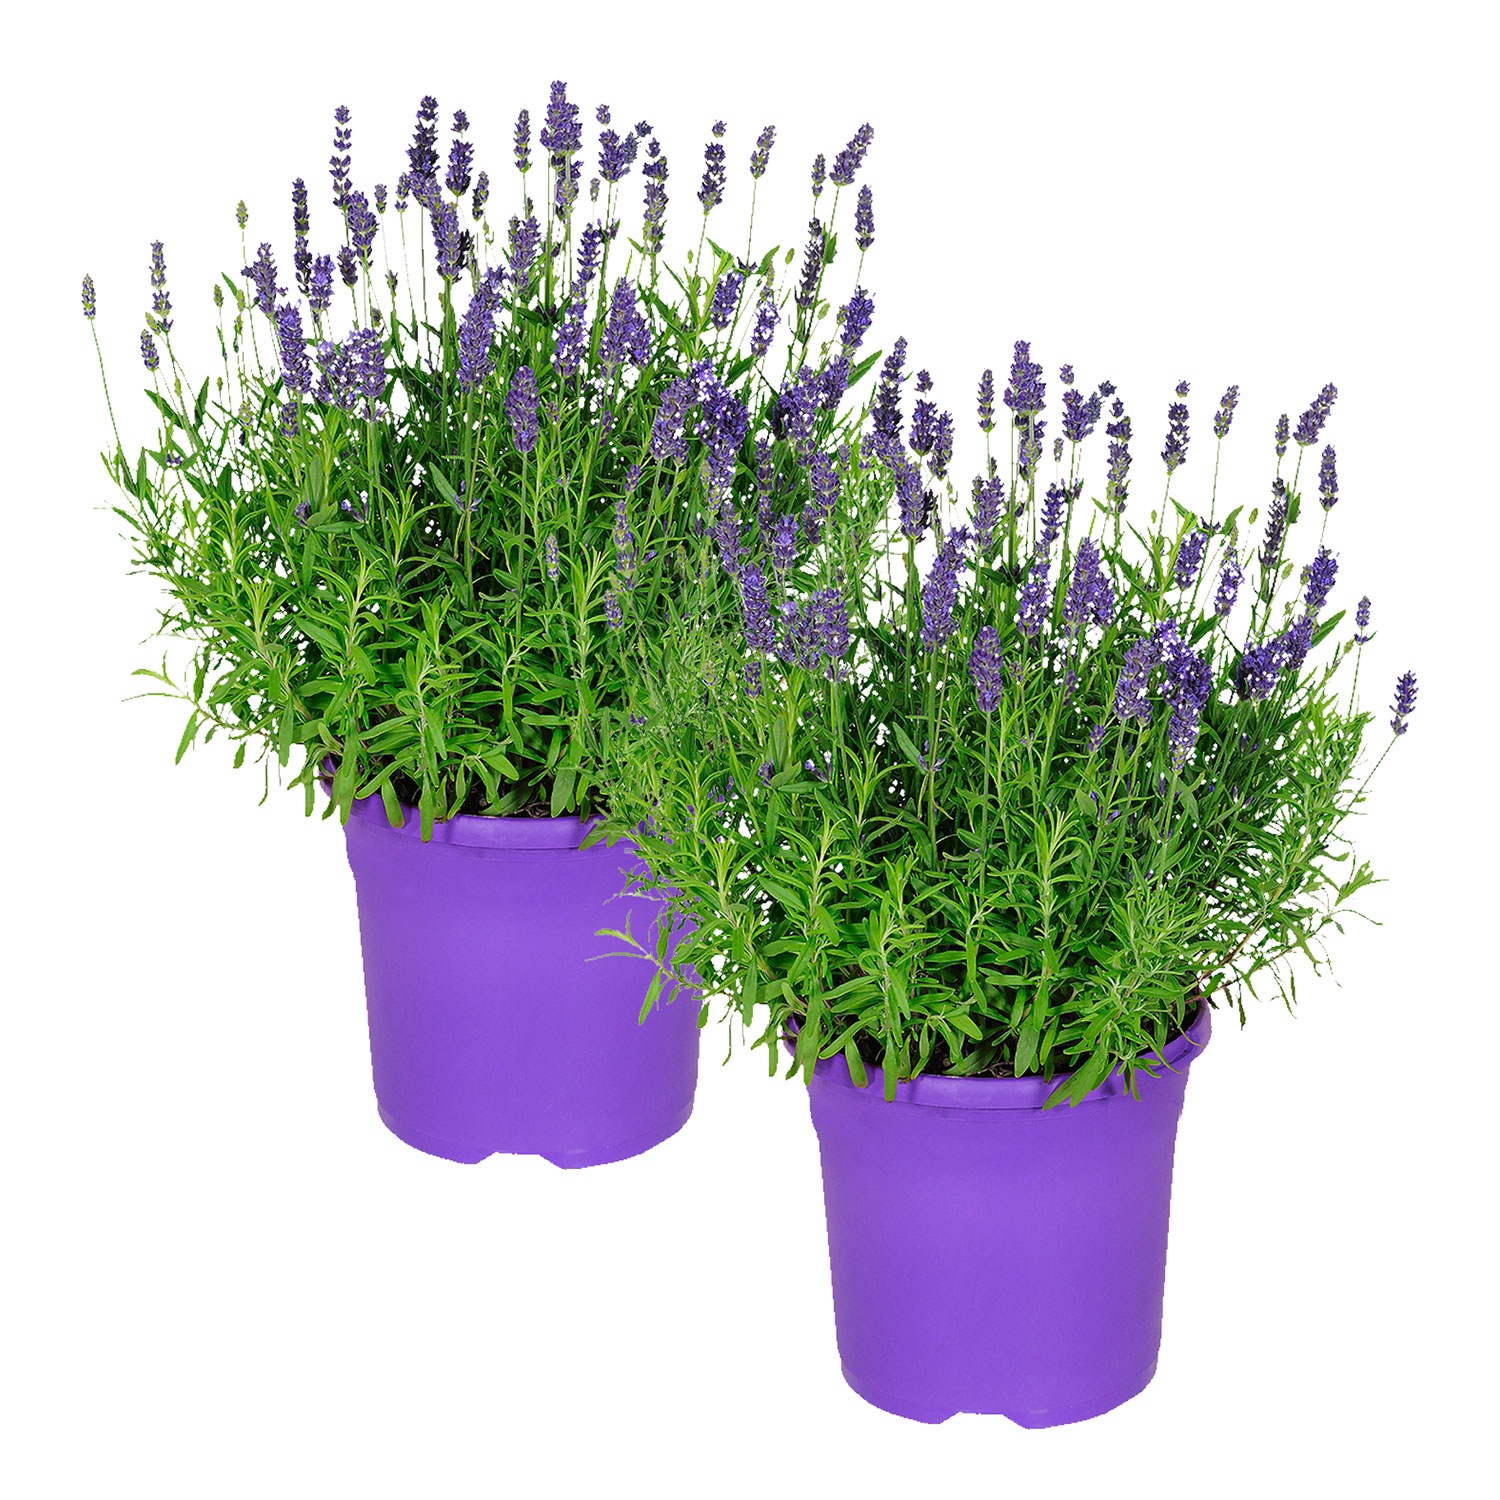 Gartenrose oder Lavendel